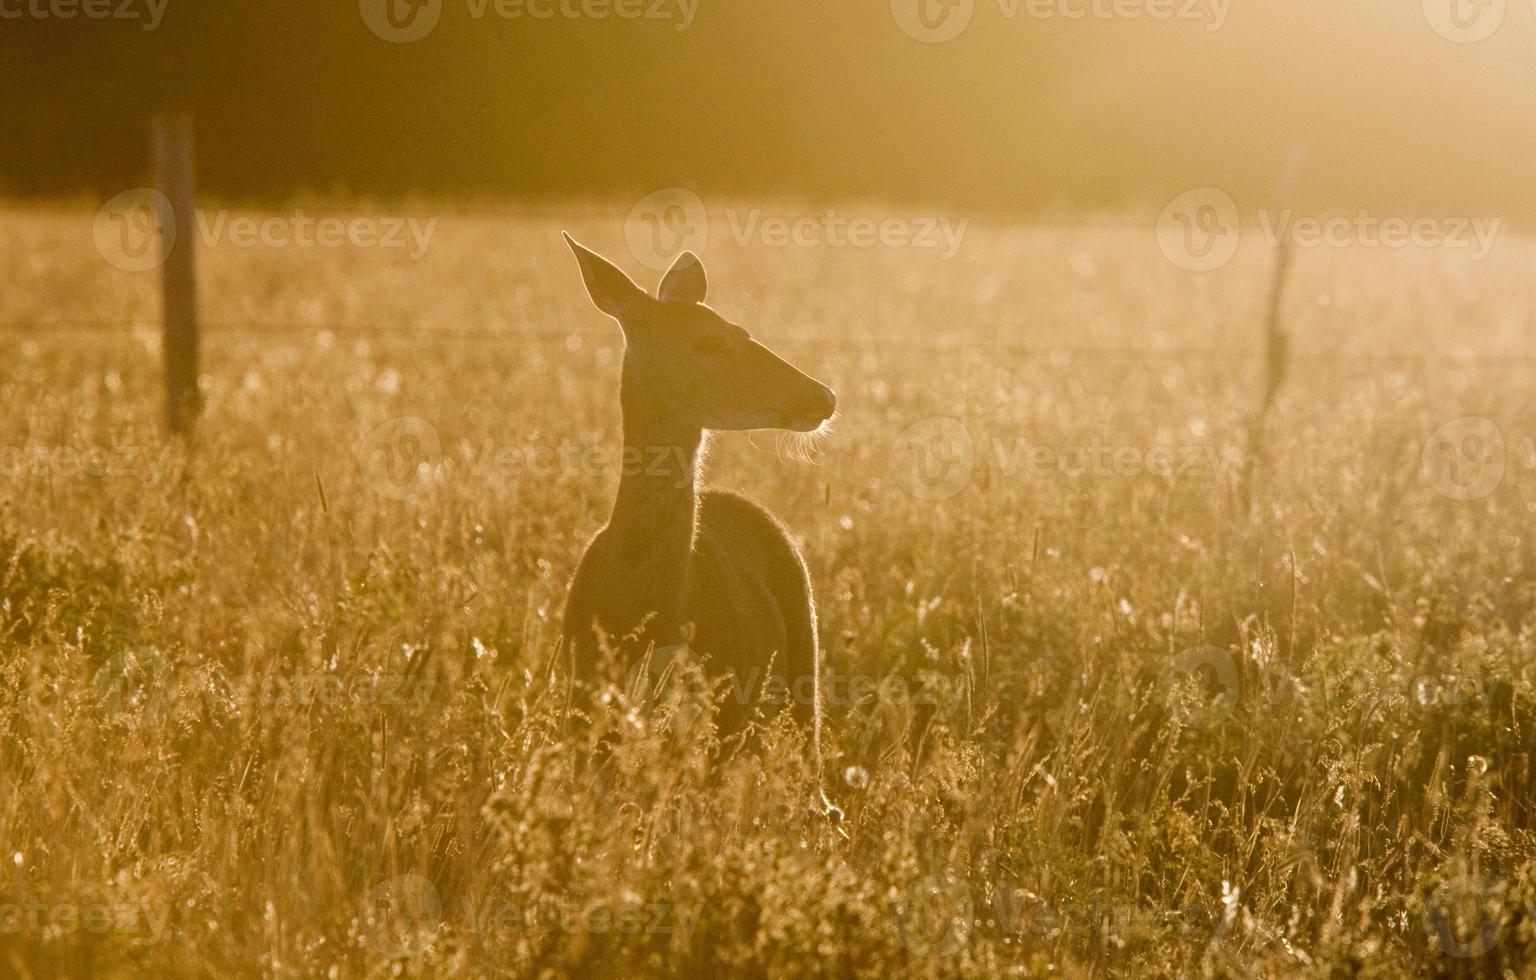 Deer in a field photo